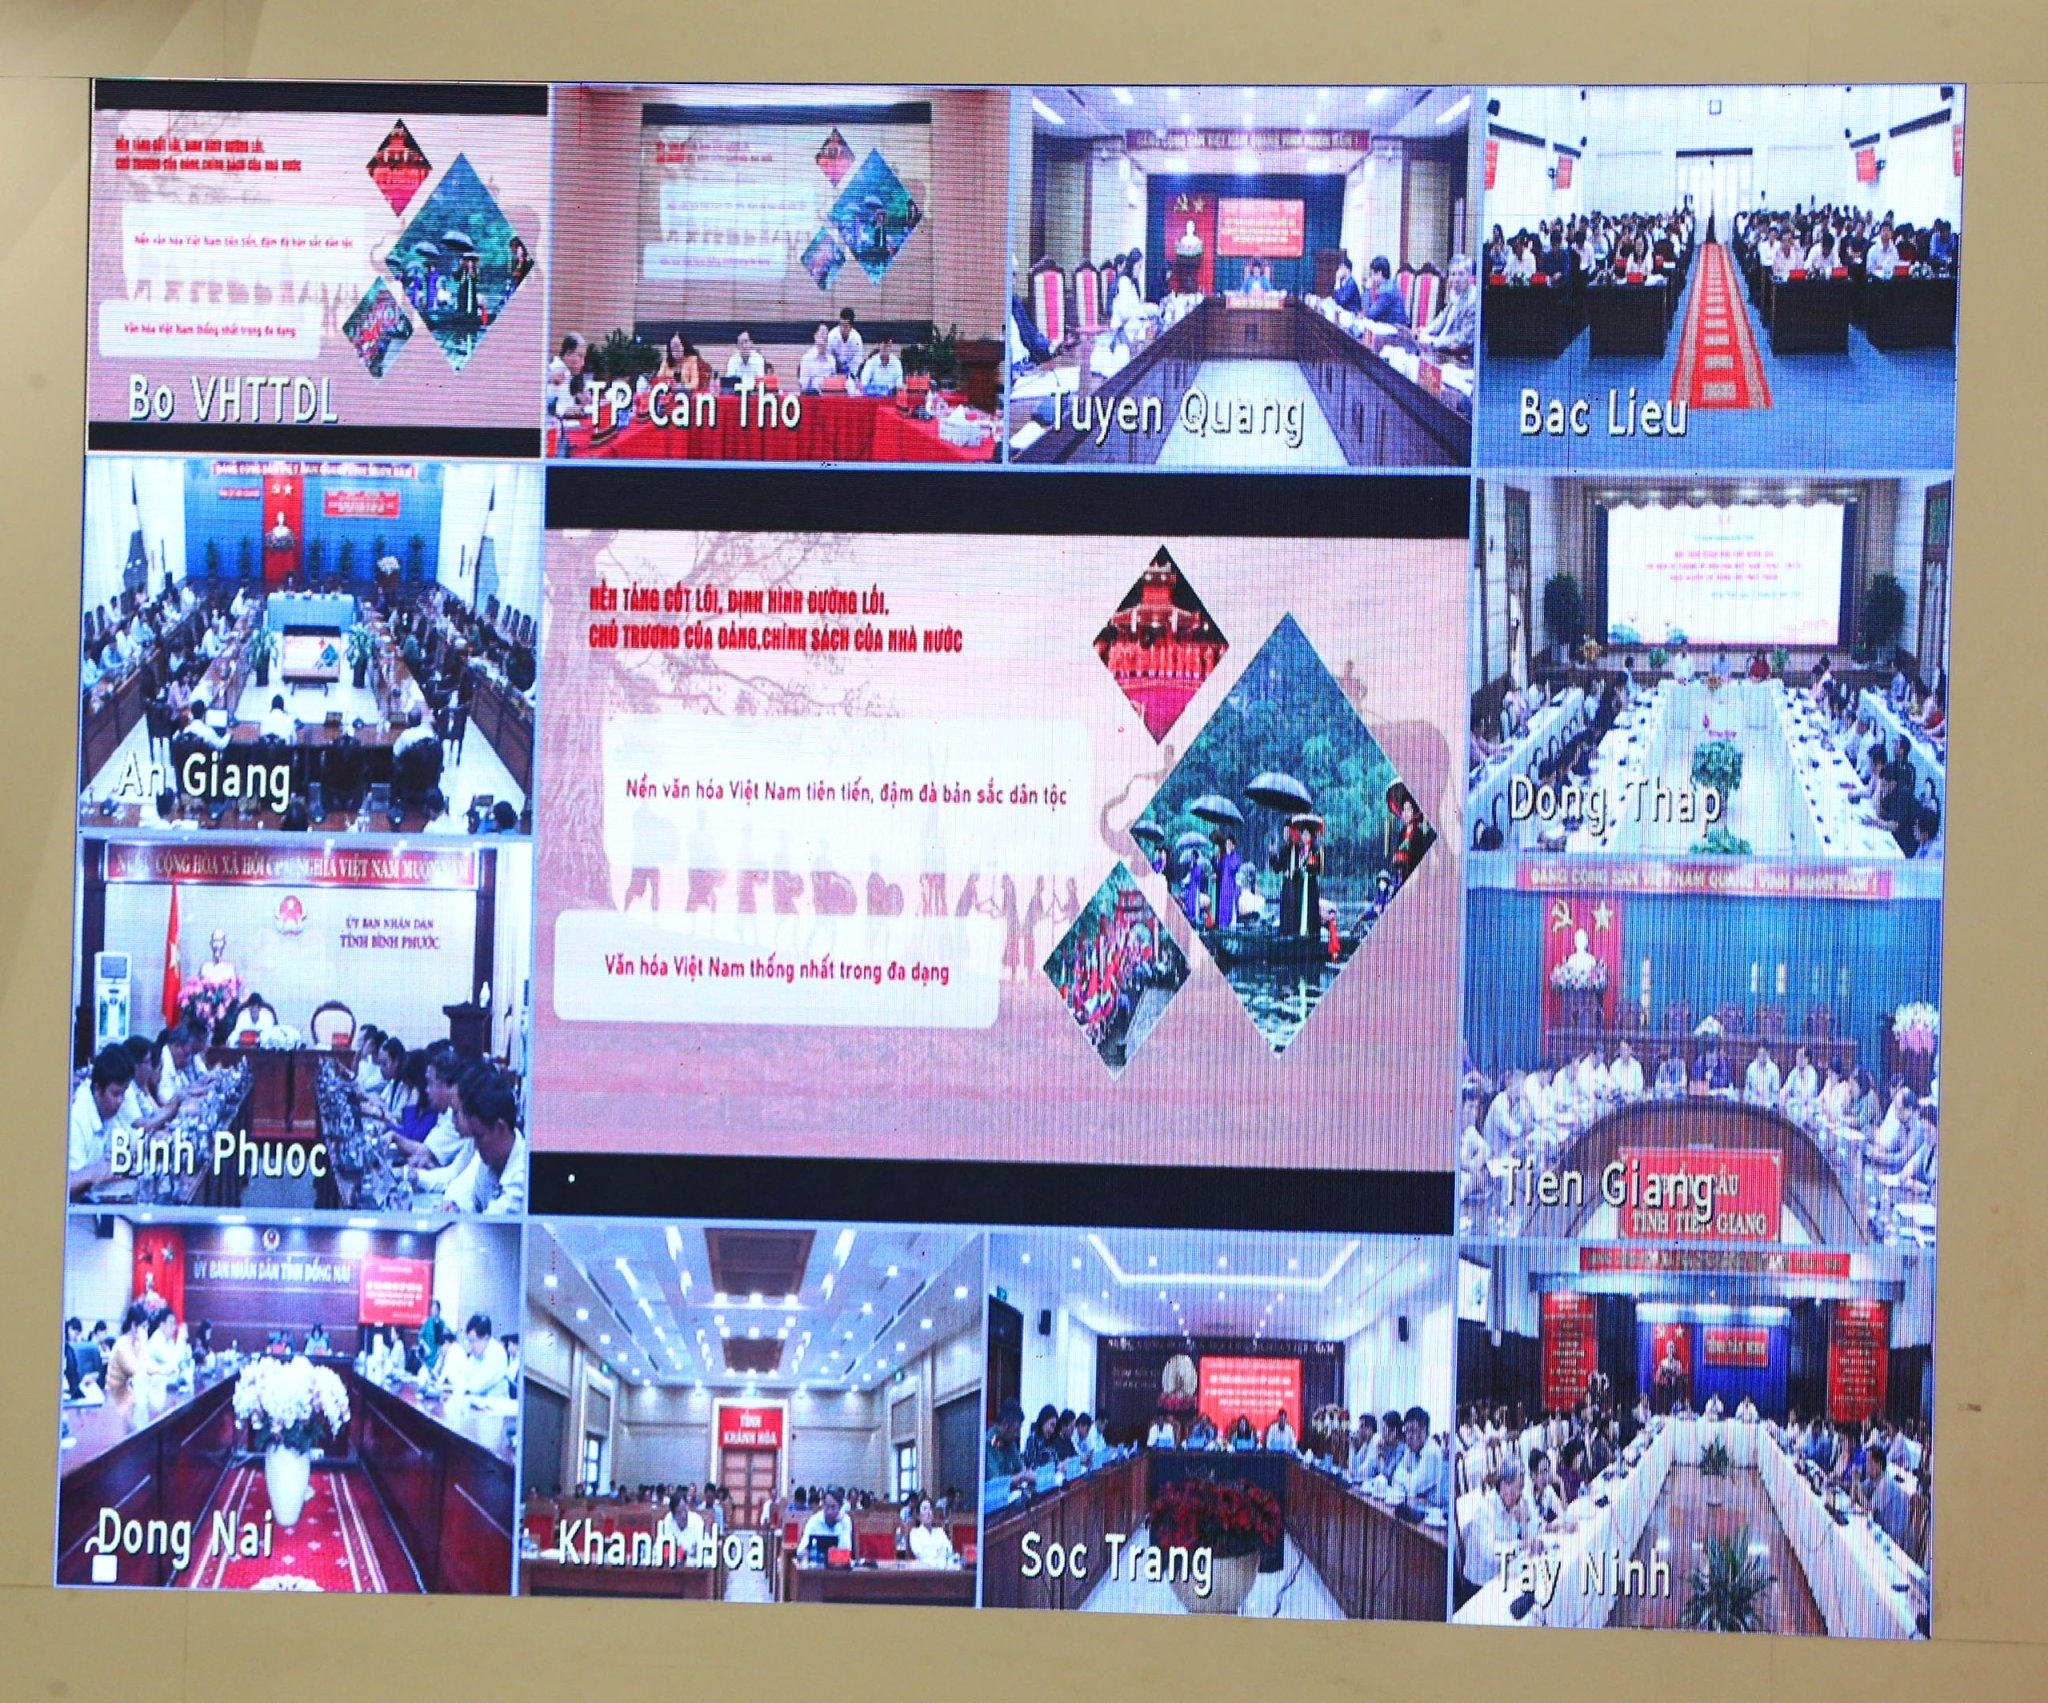 Hội thảo diễn ra trực tiếp tại Hà Nội và trực tuyến tại nhiều địa phương